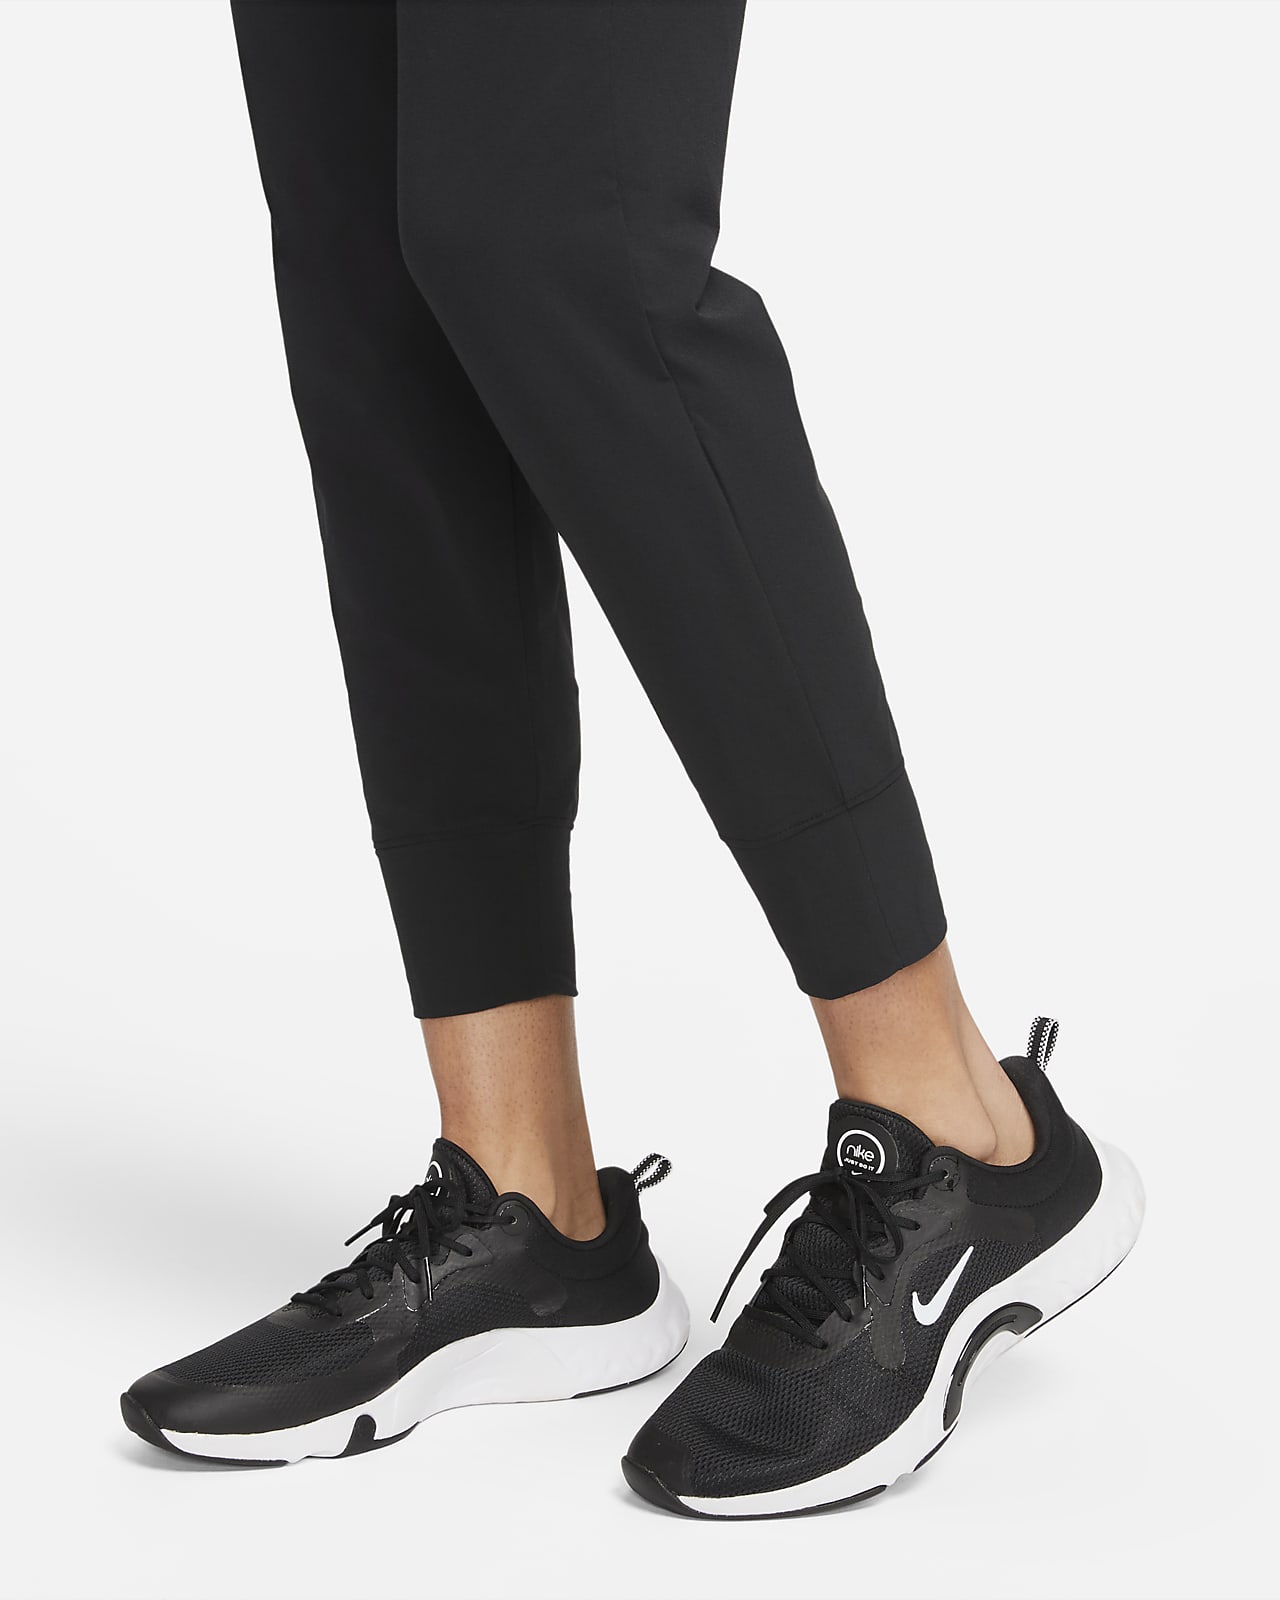 Nike Bliss Women's Training Trousers. Nike LU